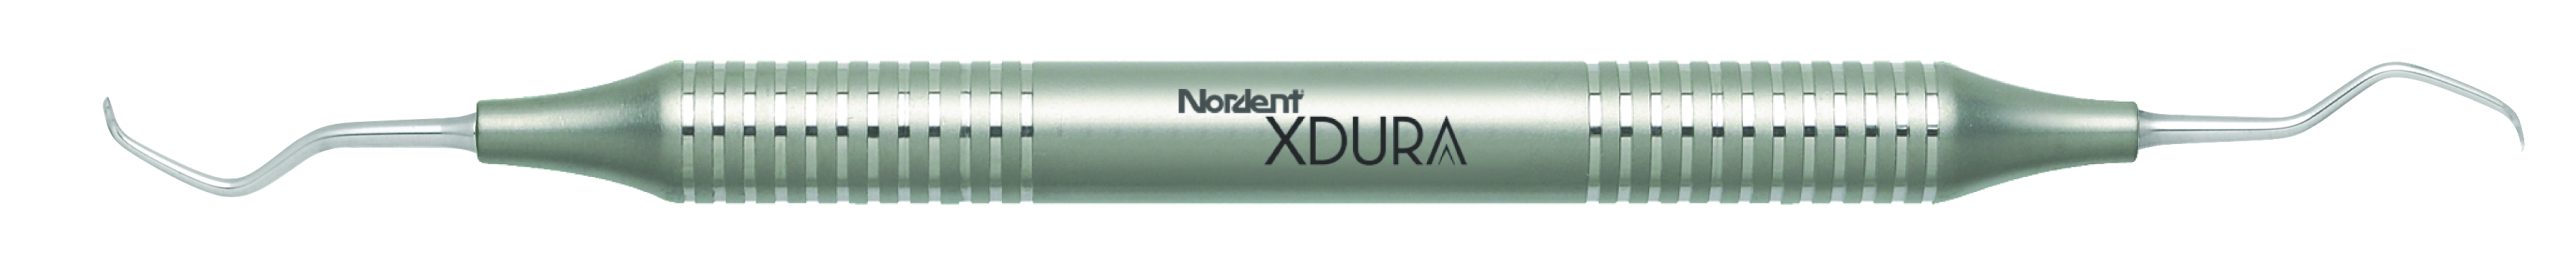 Anterior Lingual Stain Remover (ALSR) - XDURA® - DuraLite® Round